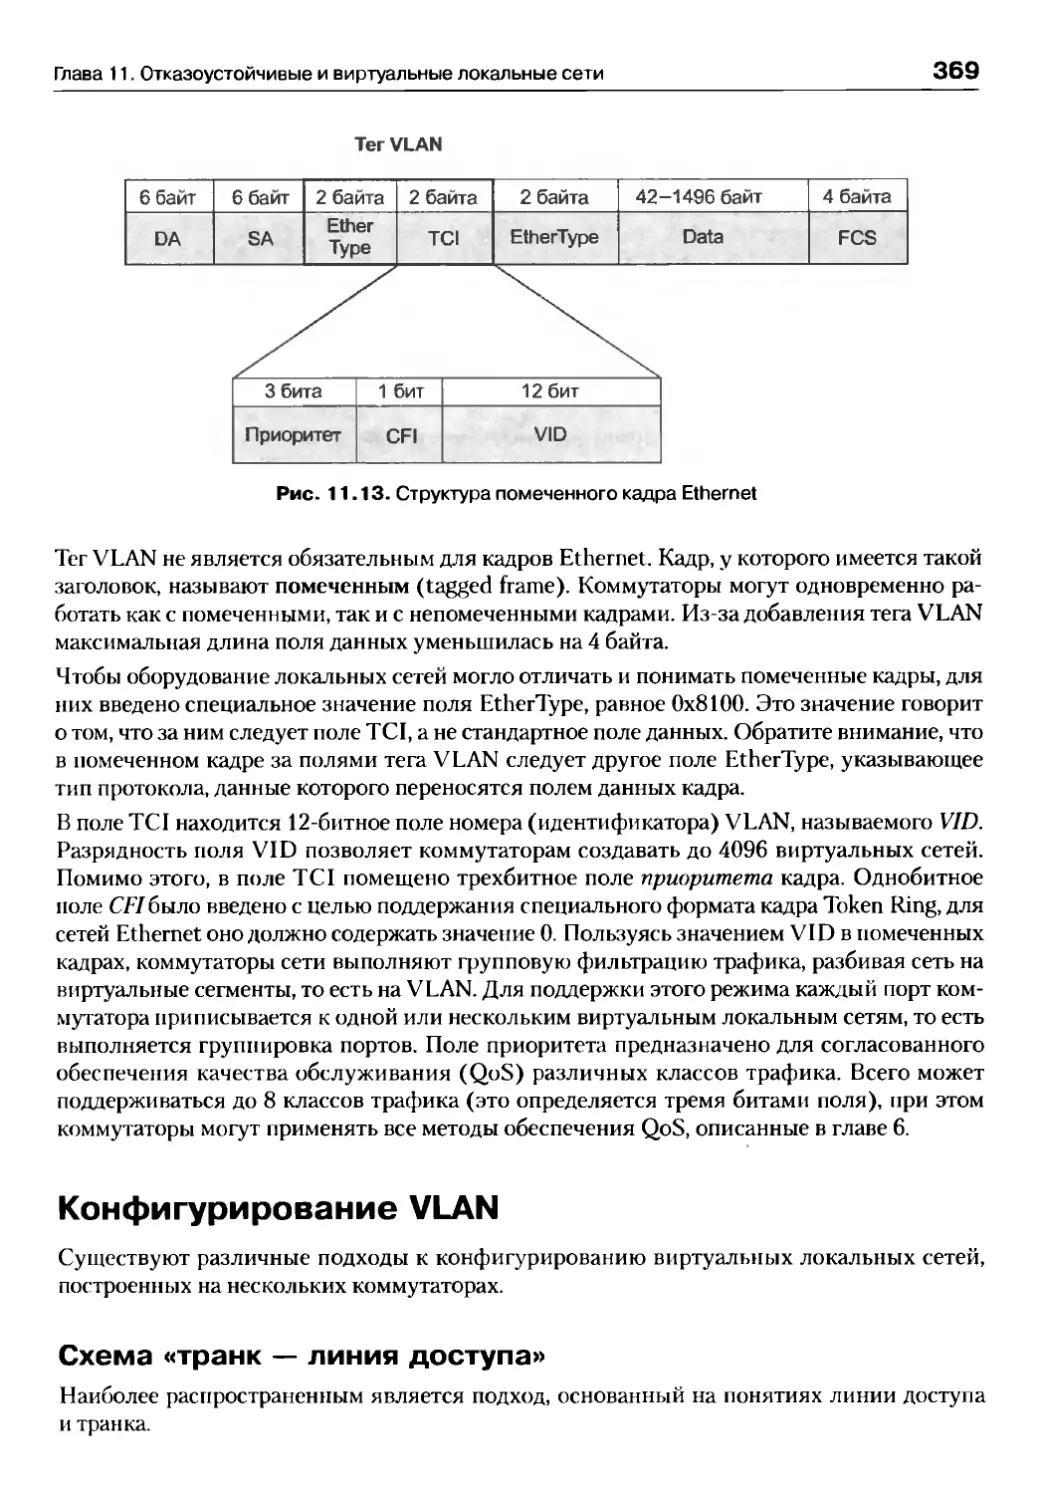 Конфигурирование VLAN